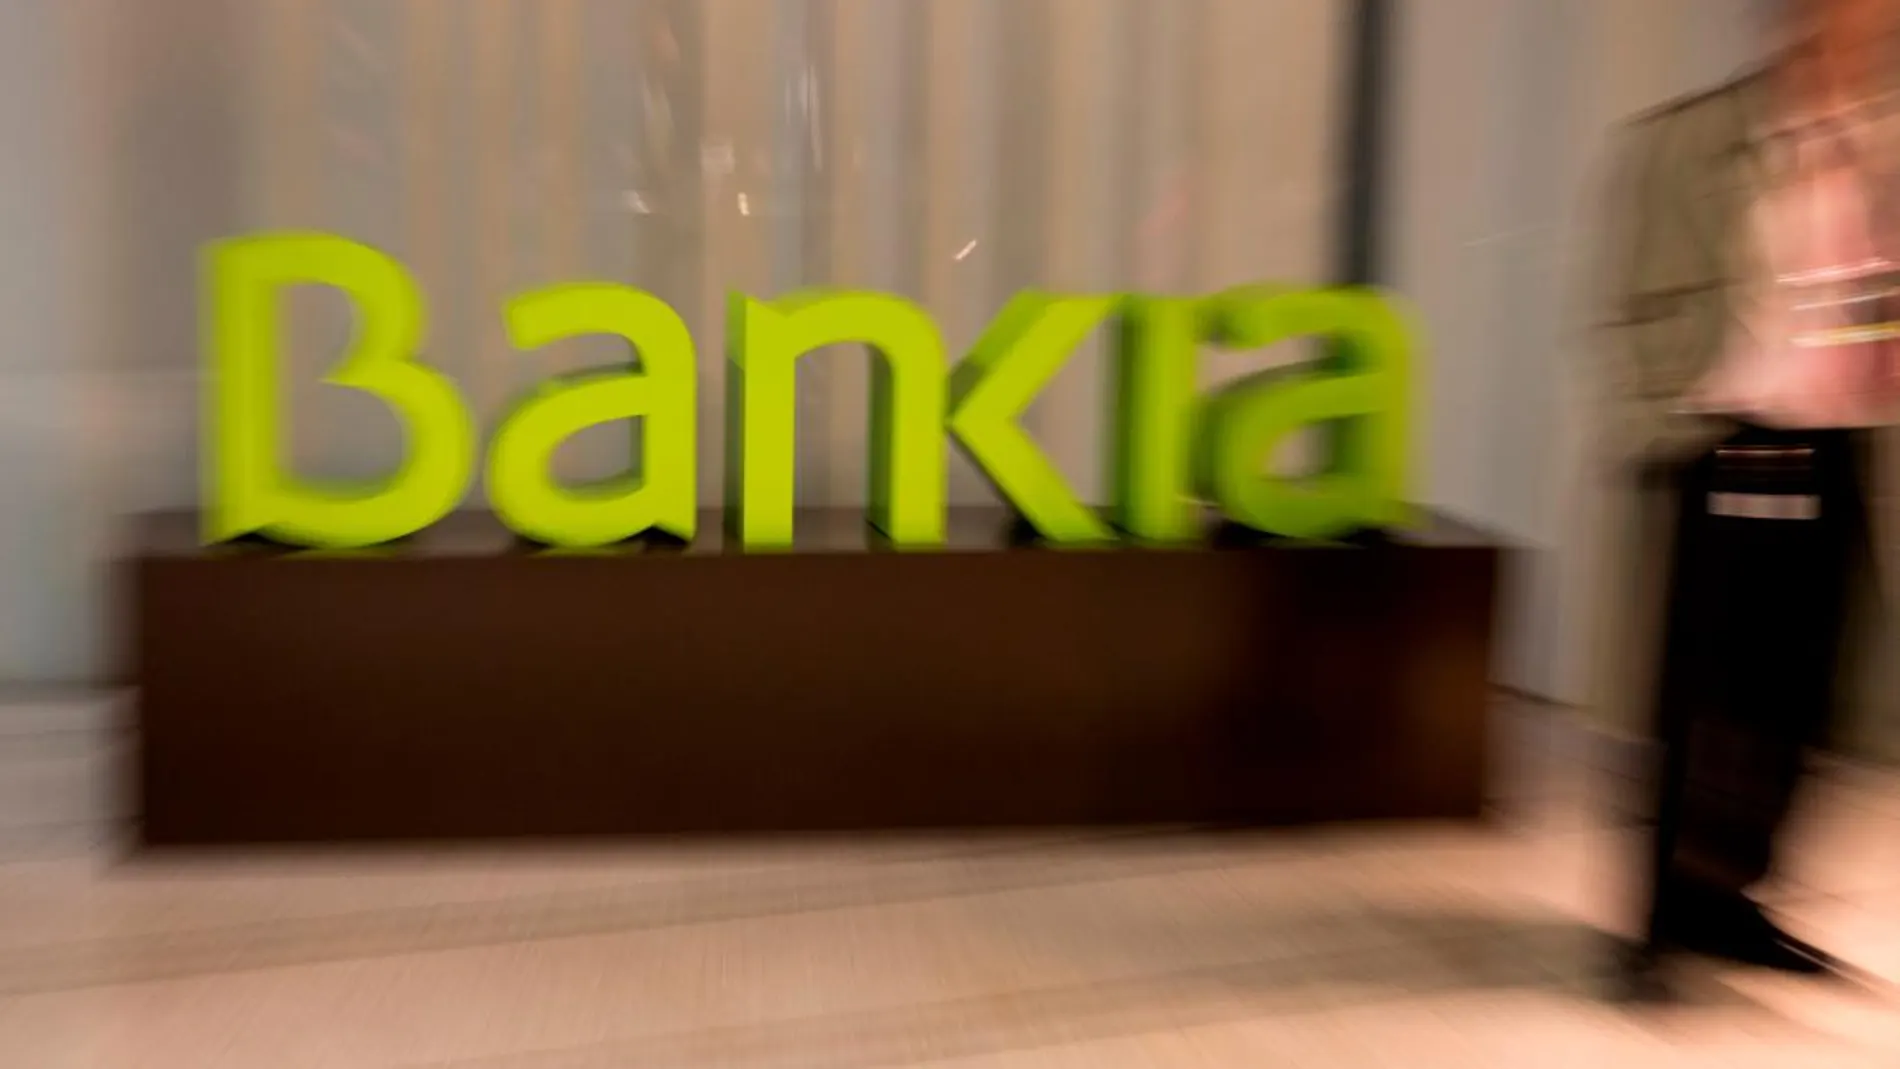 Resultados de Bankia